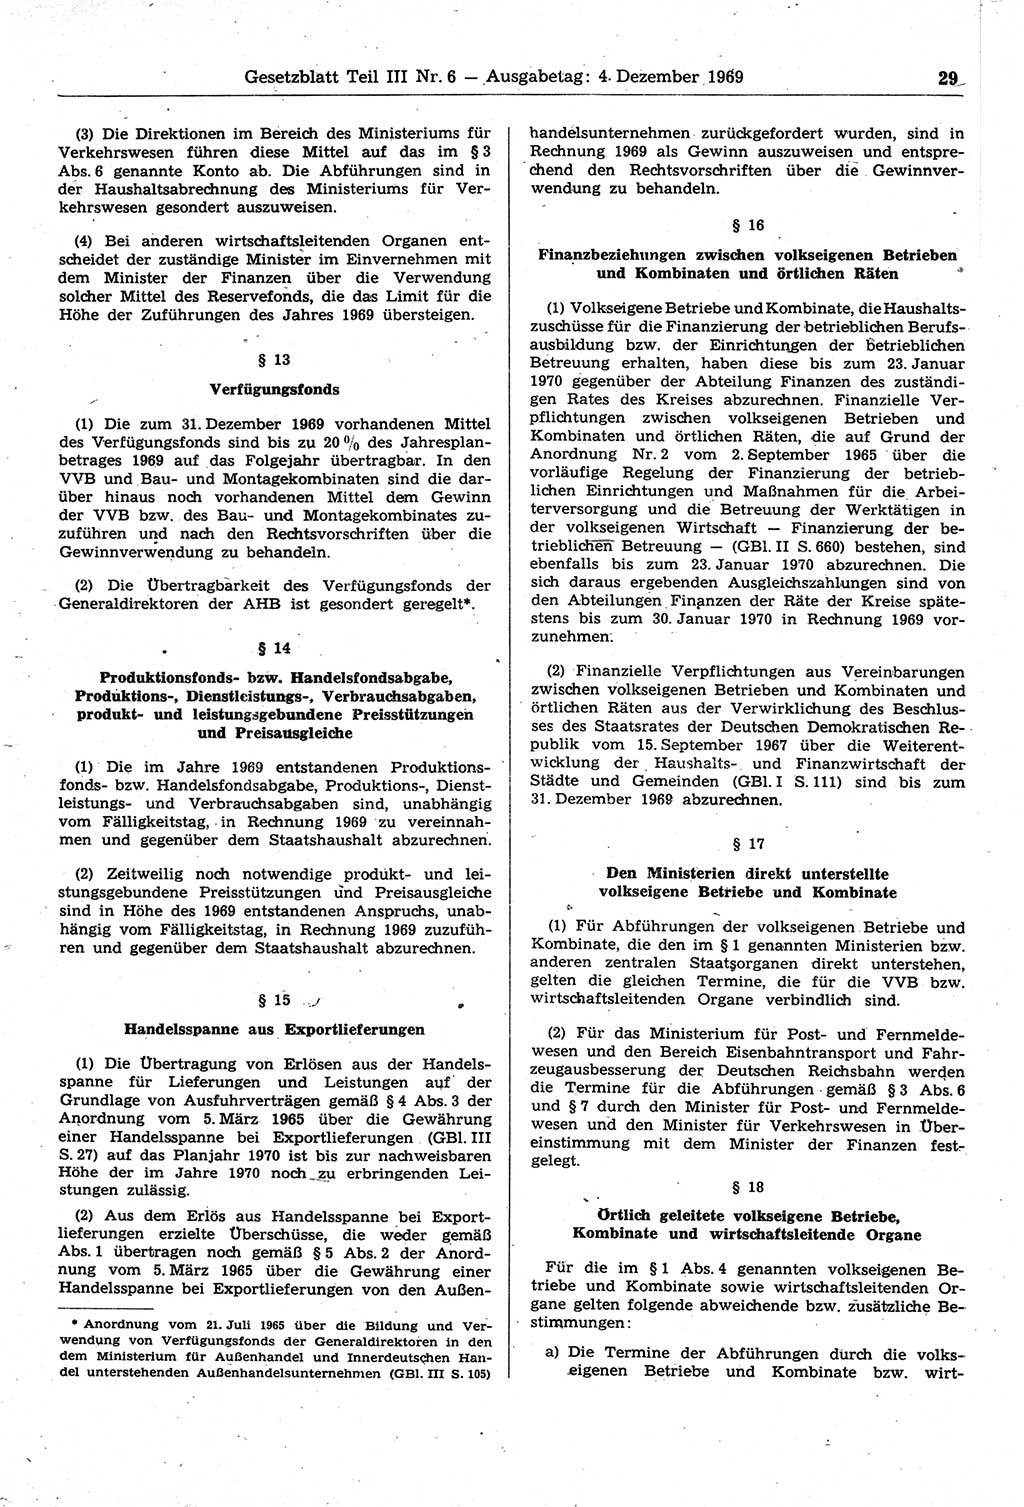 Gesetzblatt (GBl.) der Deutschen Demokratischen Republik (DDR) Teil ⅠⅠⅠ 1969, Seite 29 (GBl. DDR ⅠⅠⅠ 1969, S. 29)